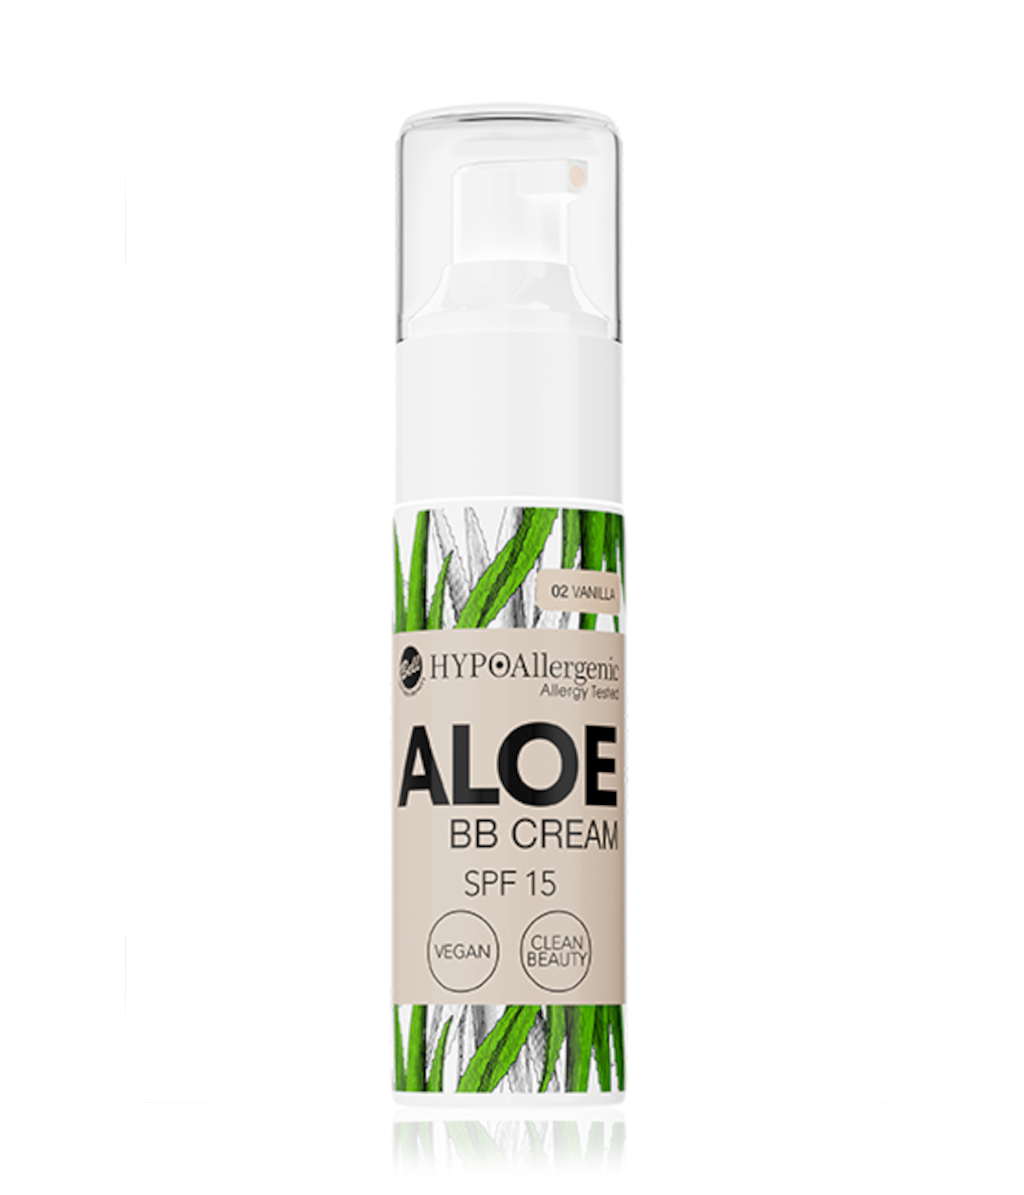 Aloe BB Cream SPF 15 02 Vanilla